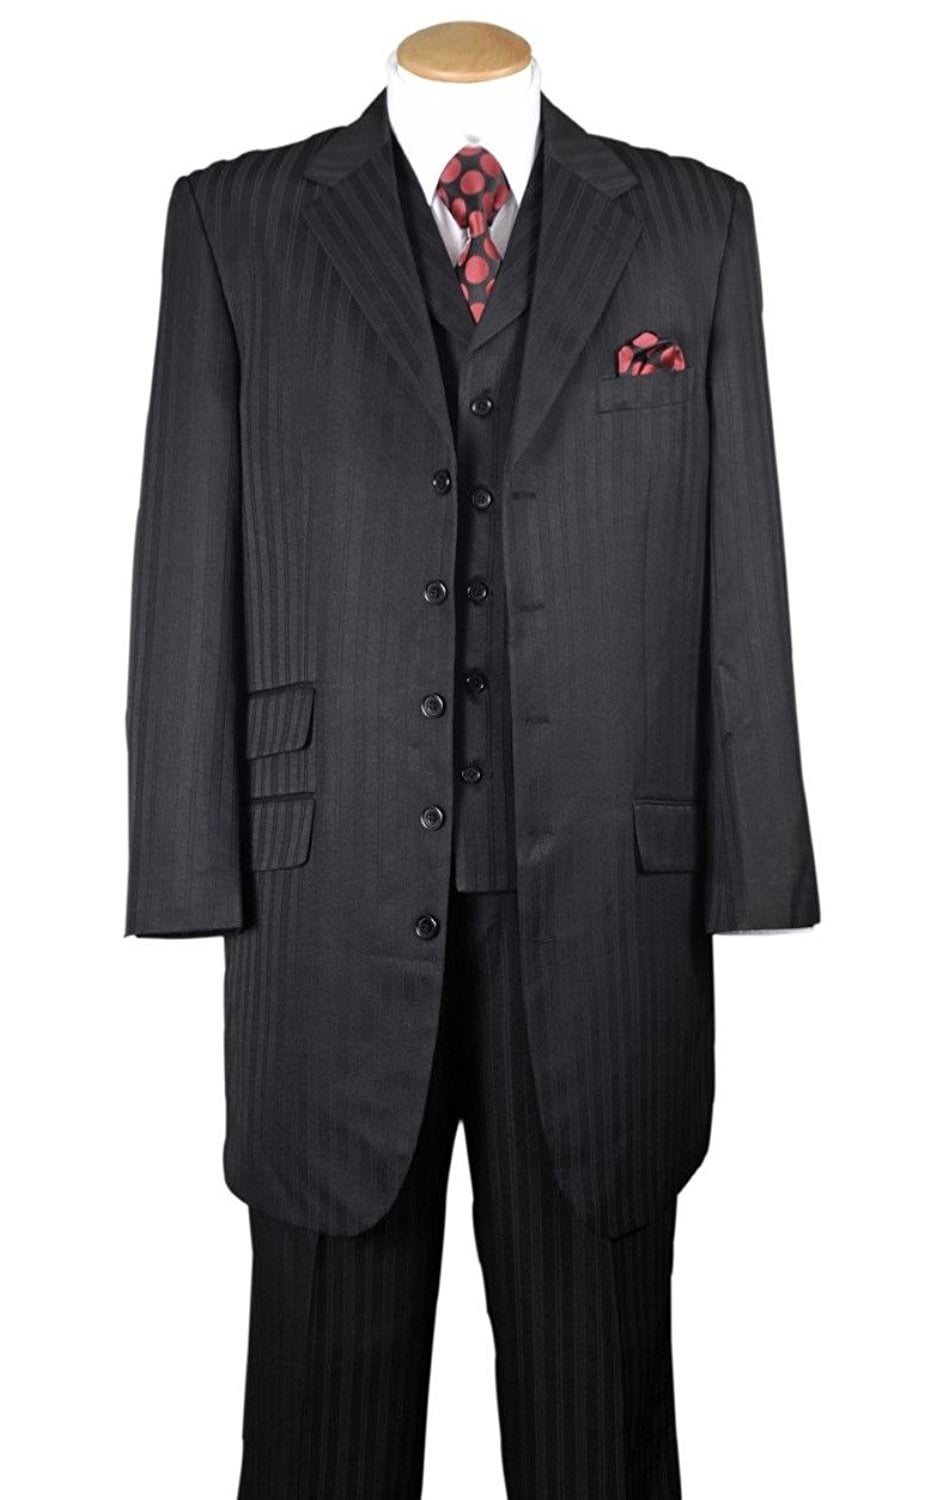 Men's 3 piece w/vest 3 button Striped Fancy Wool Feel Suit Style 5802V4 